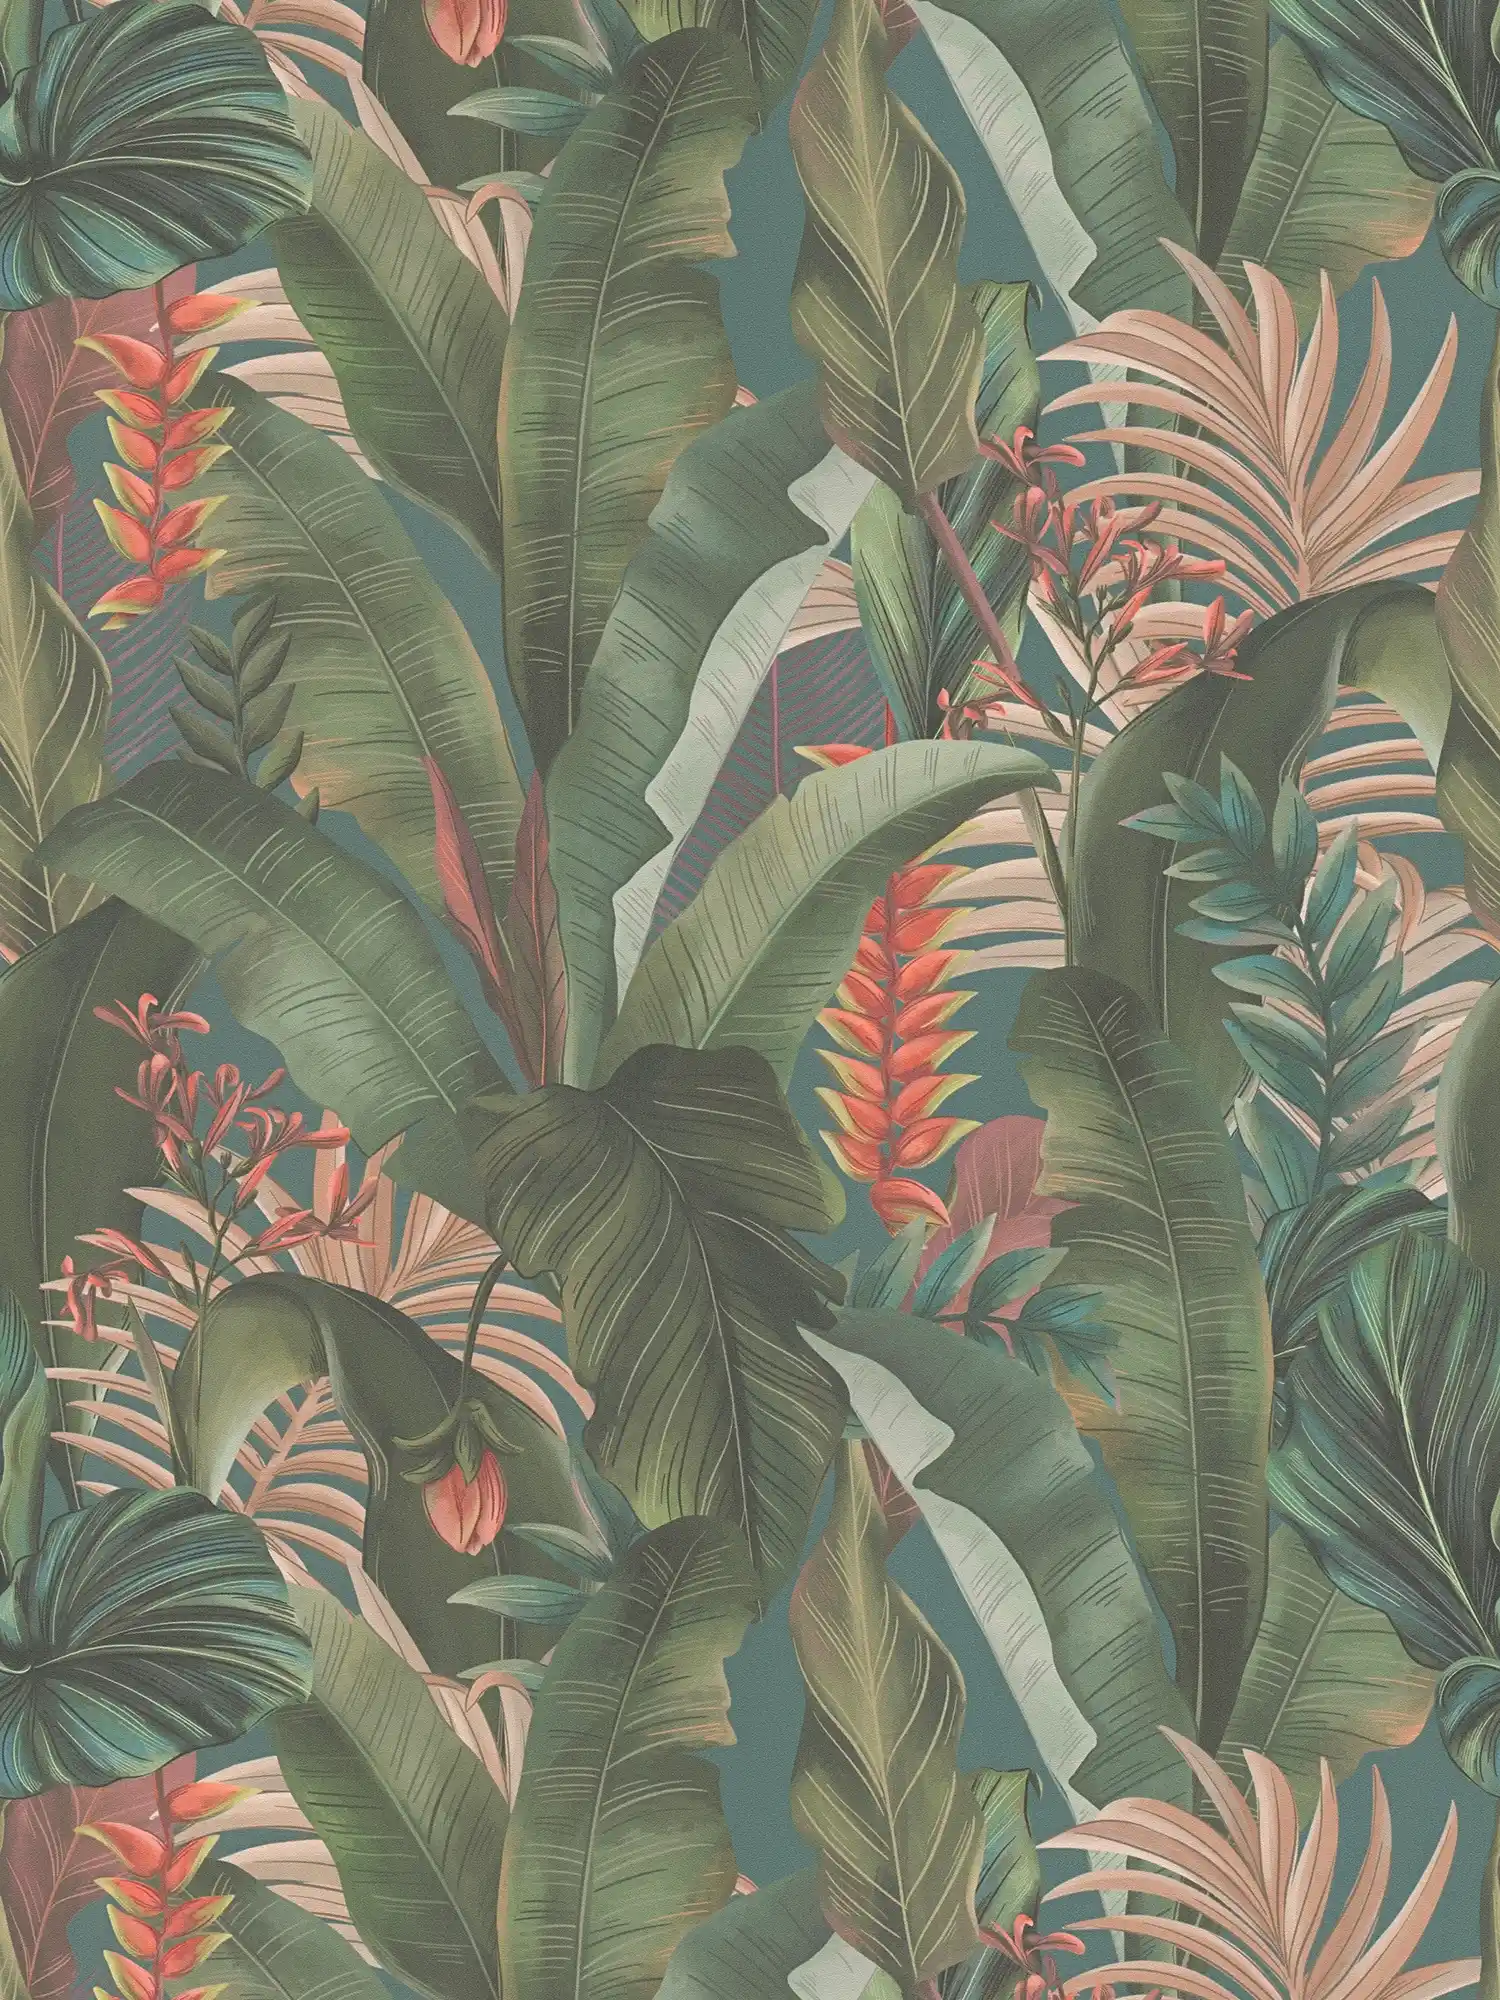 Dschungeltapete floral mit Palmenblättern & Blüten strukturiert matt – Blau, Petrol, Grün
